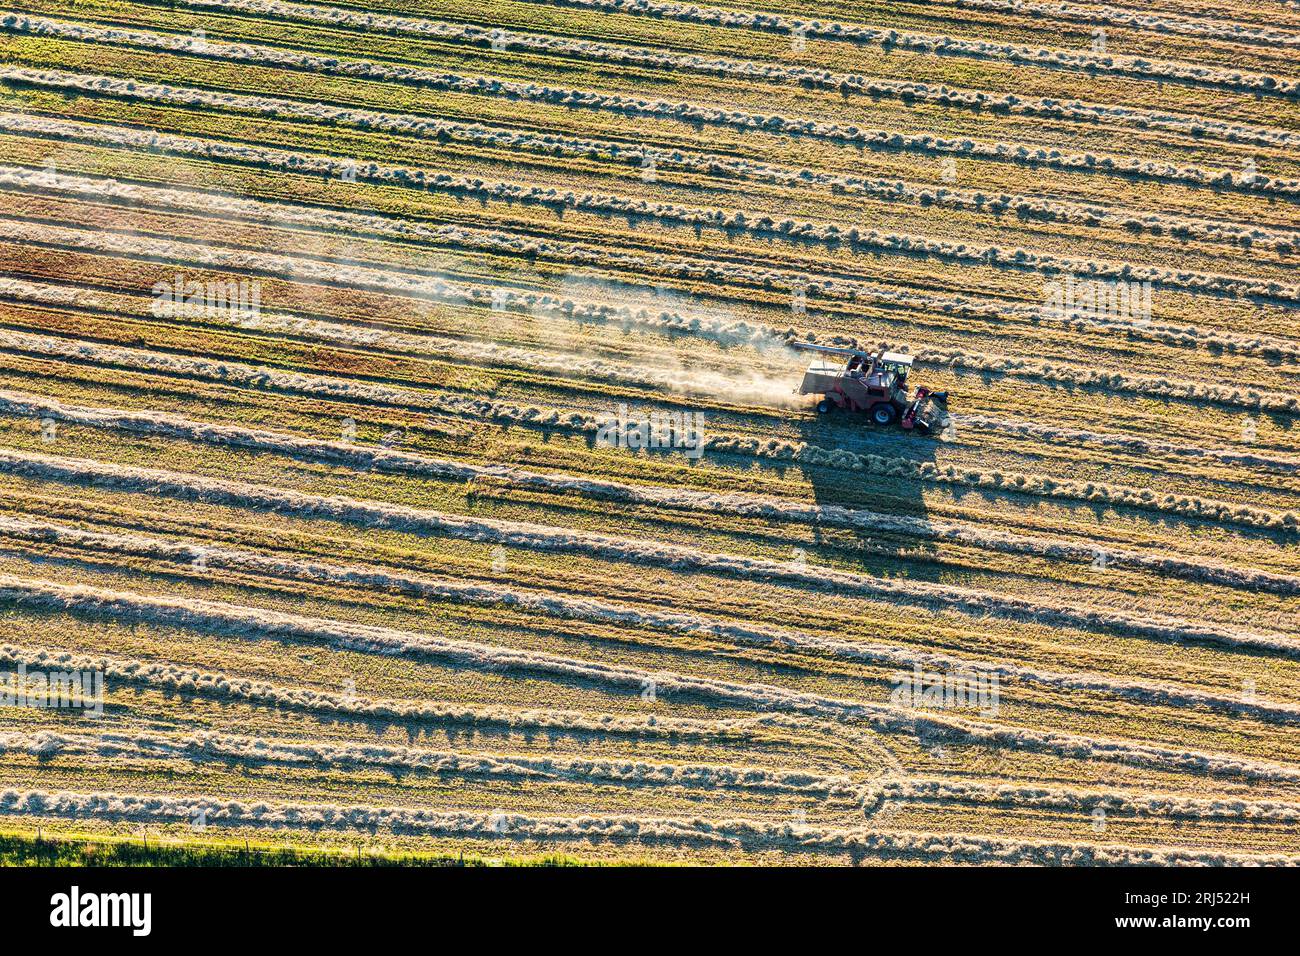 Culture commerciale du blé à Creston, dans la région de Kootenay, dans le sud-est de la Colombie-Britannique, Canada, modèles de photographies aériennes Banque D'Images